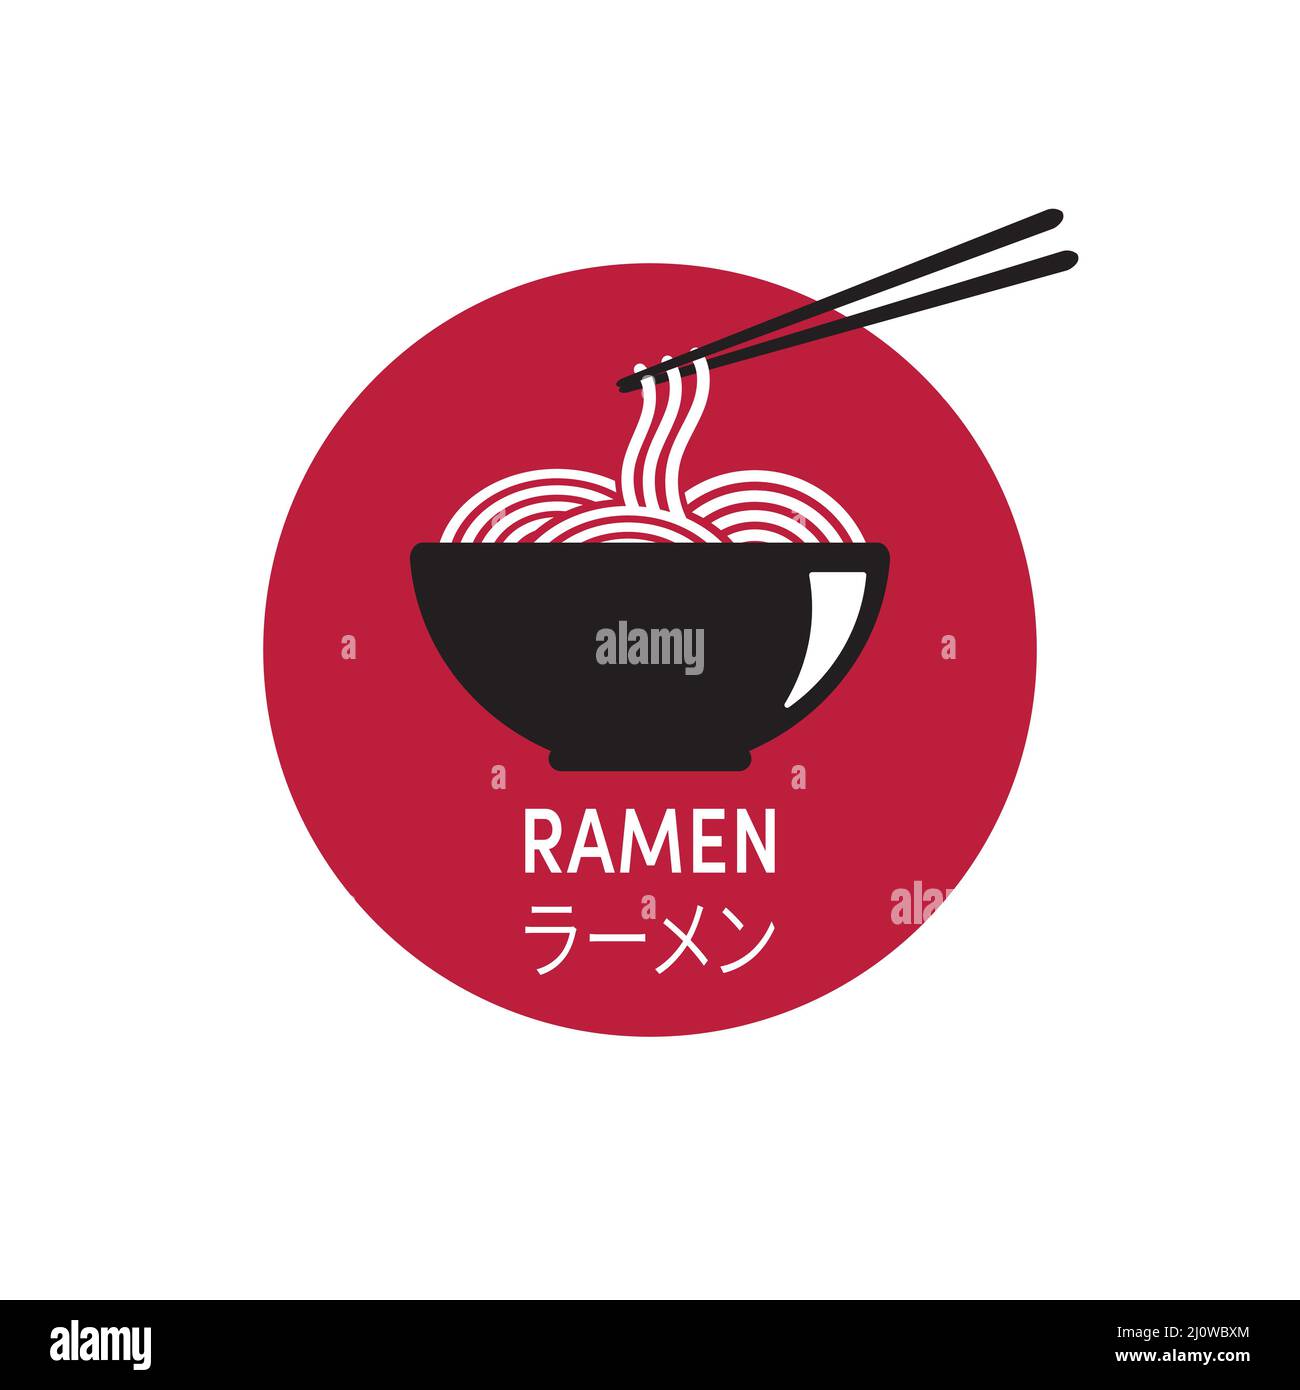 ラーメン - Ramen Noodles - Vector illustration on a white background Stock Vector